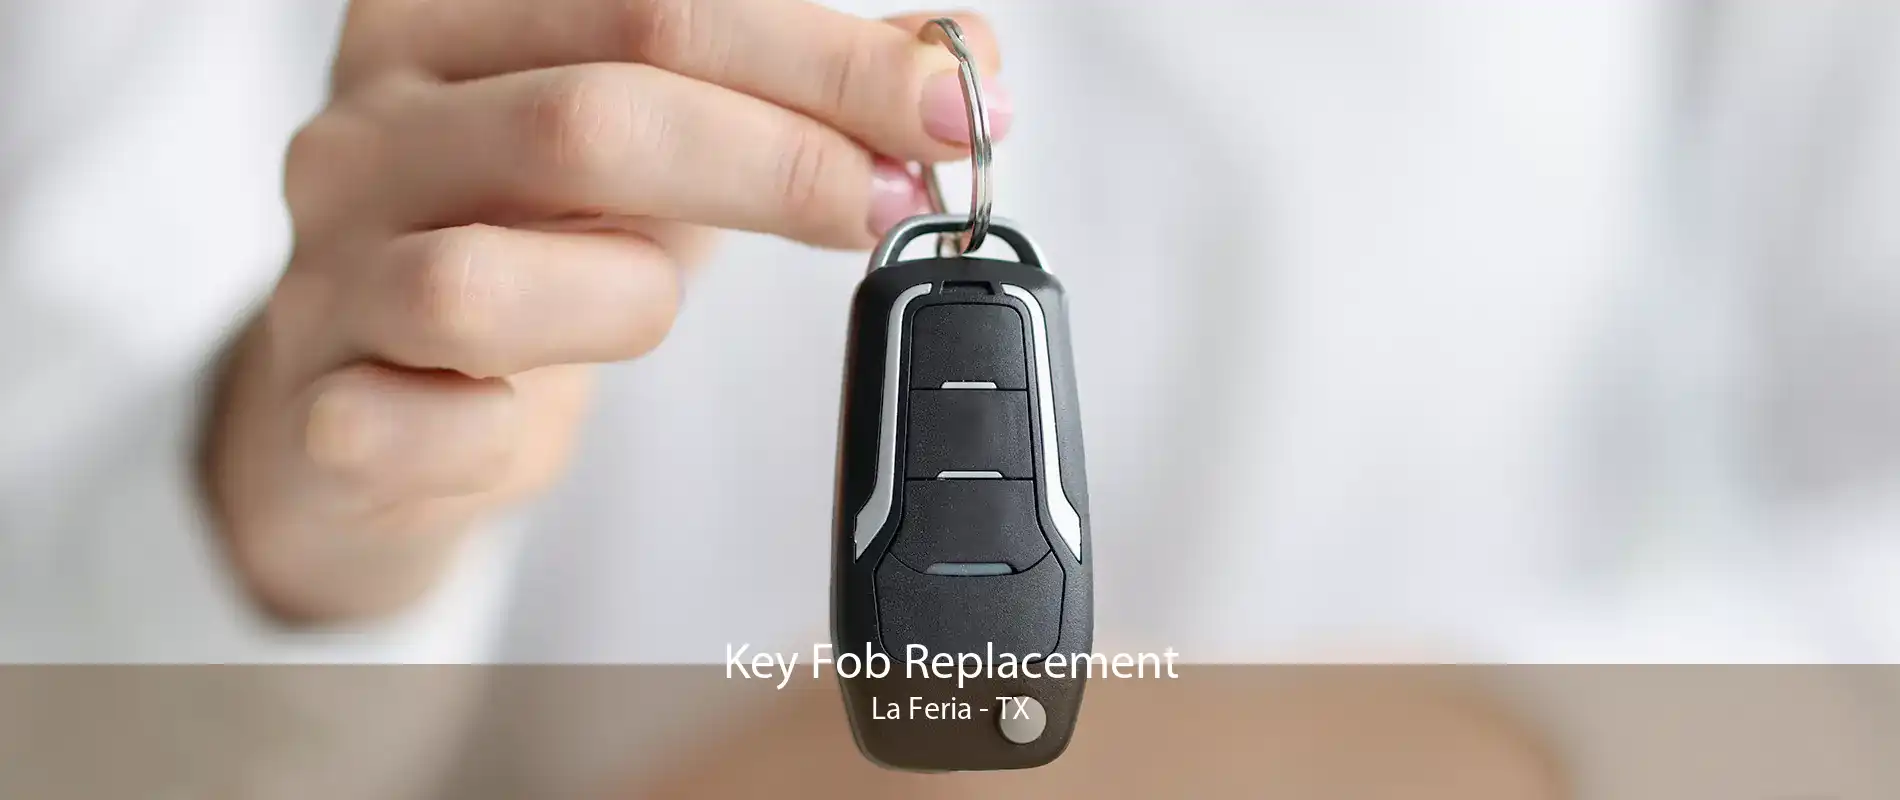 Key Fob Replacement La Feria - TX